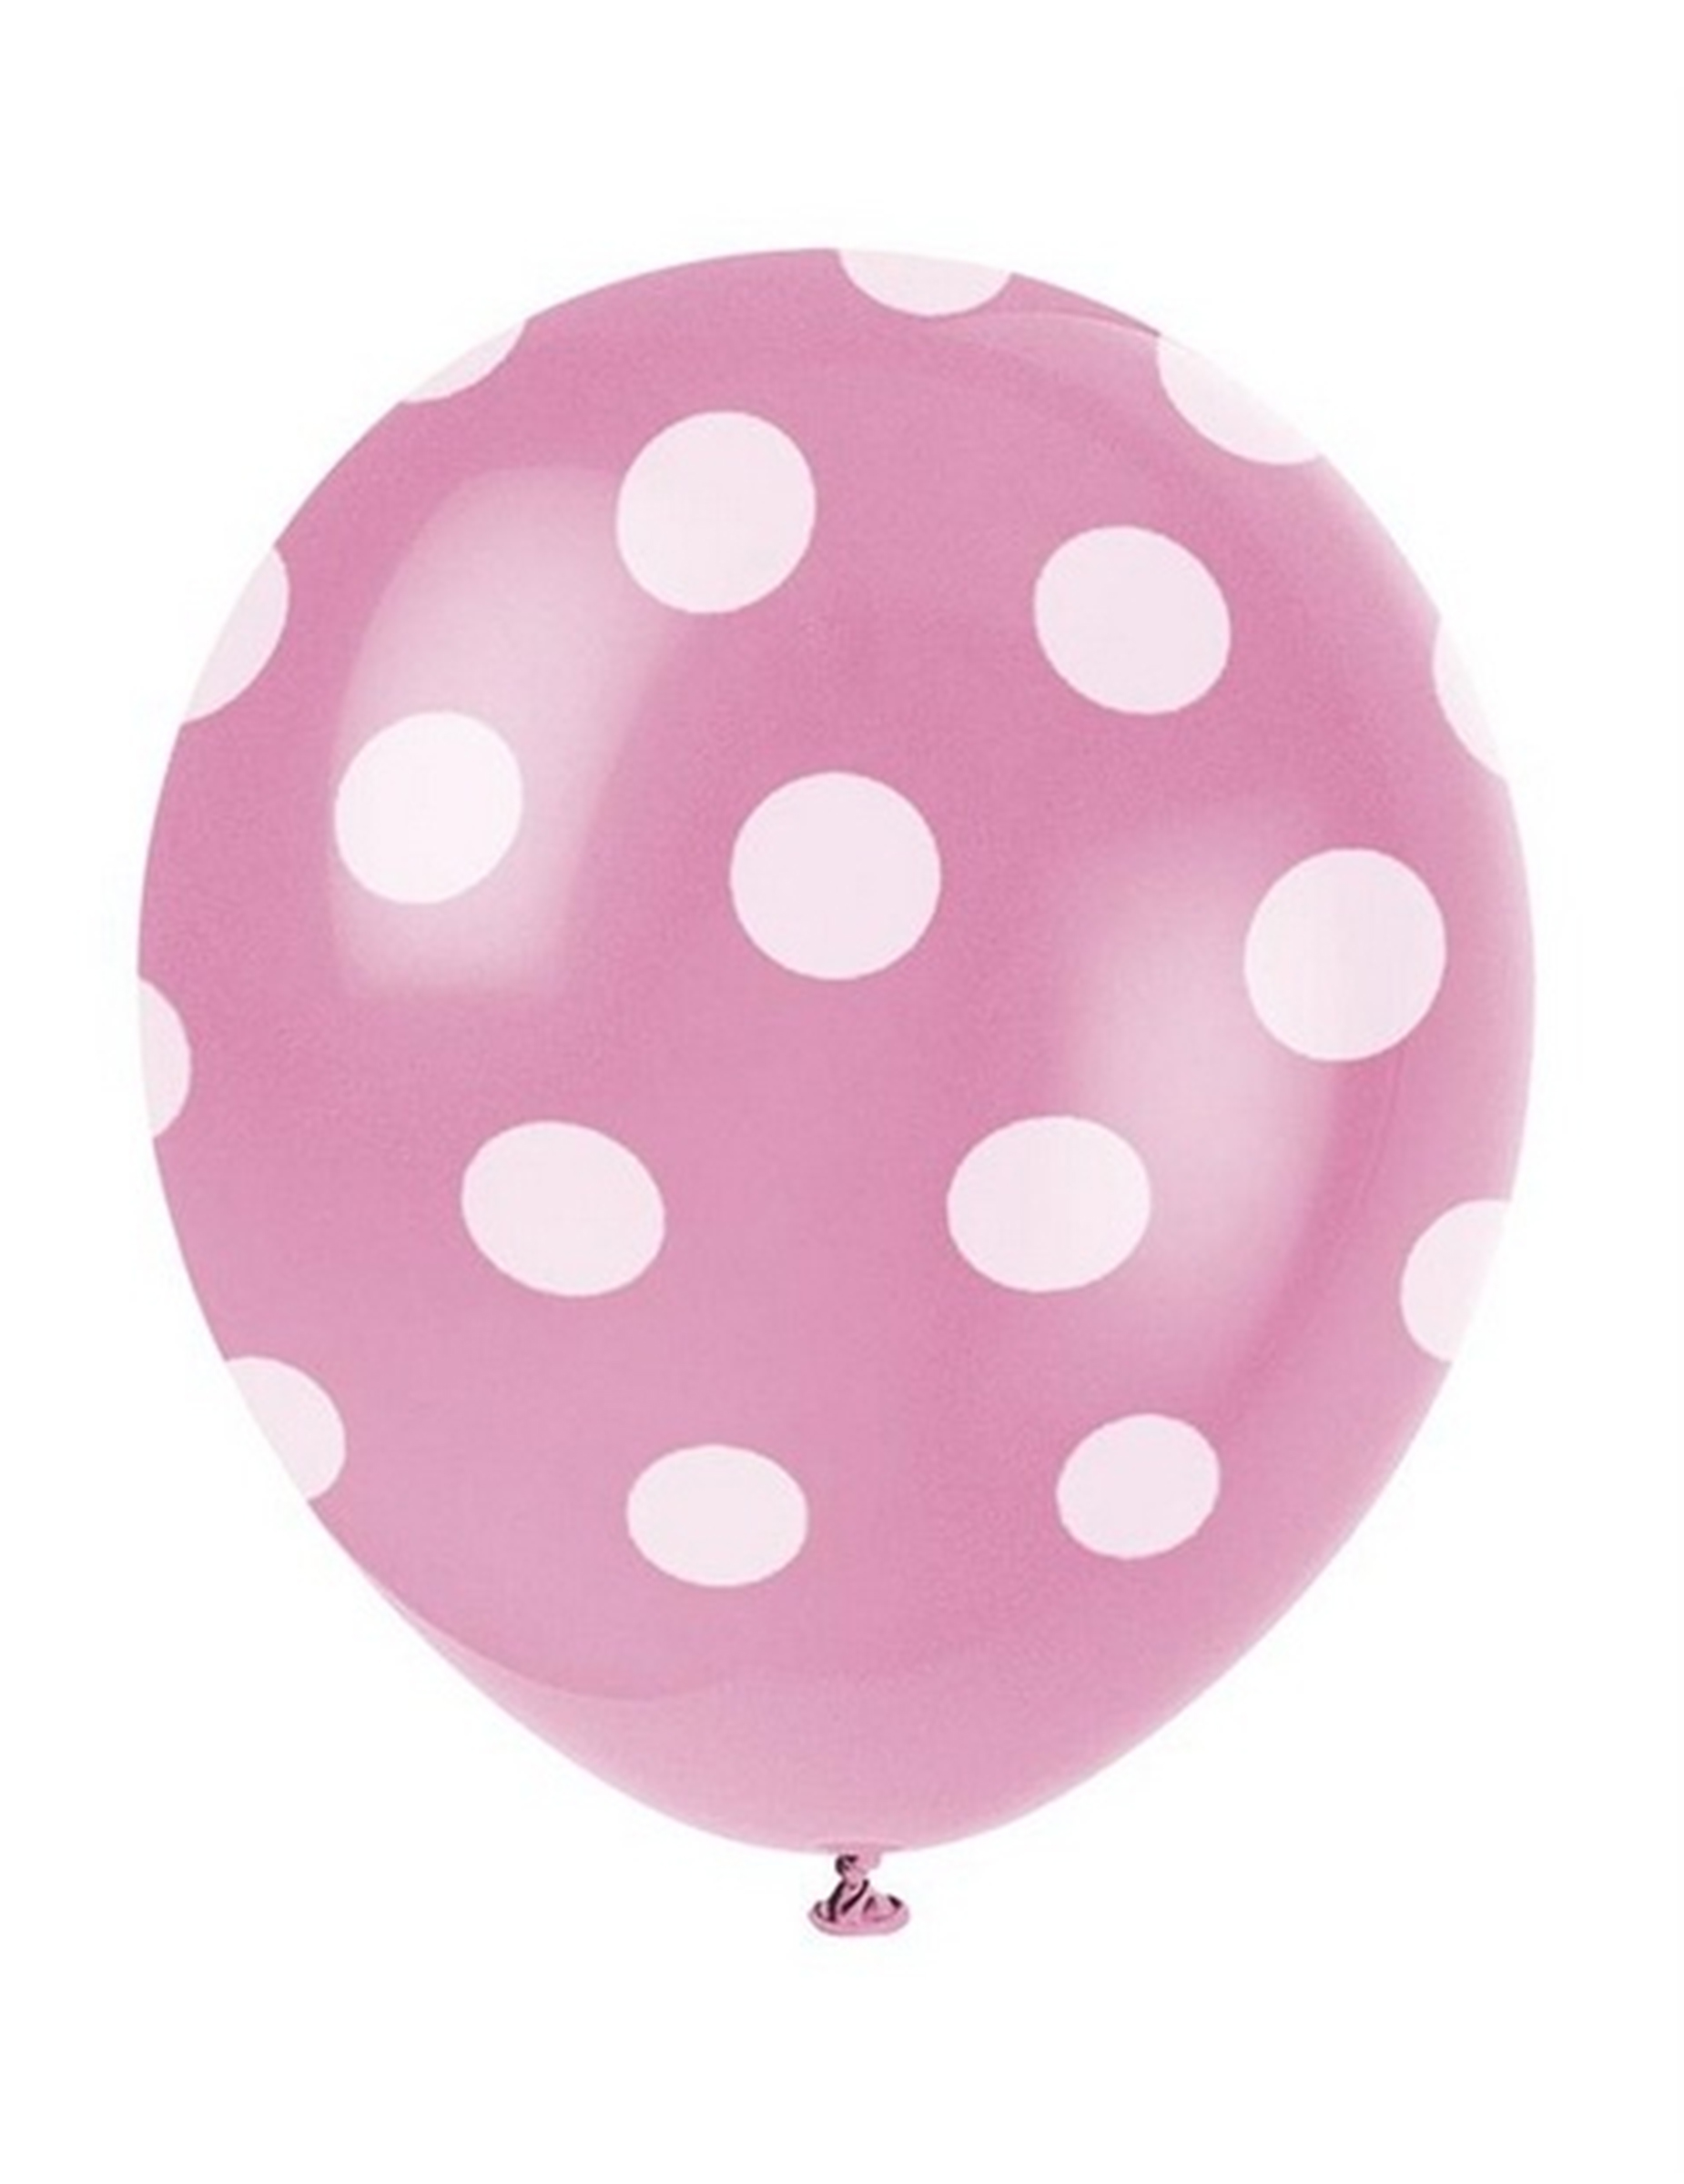 Luftballons Raumdeko 6 stück rosa-weiss gepunktet von UNIQUE